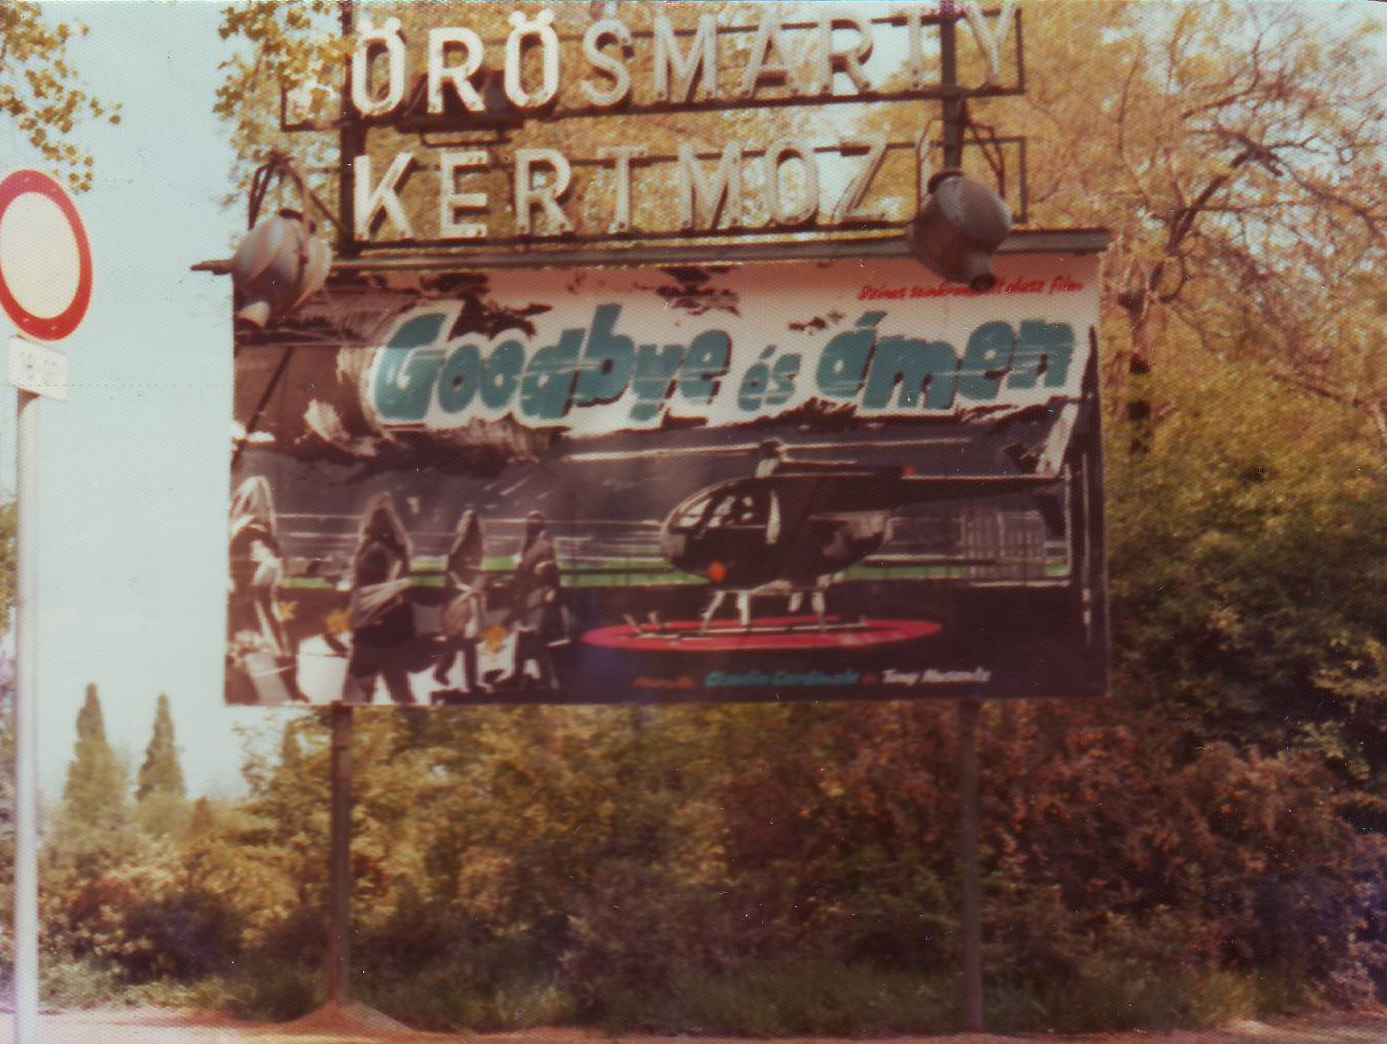 VorosmartyKertmozi-1981